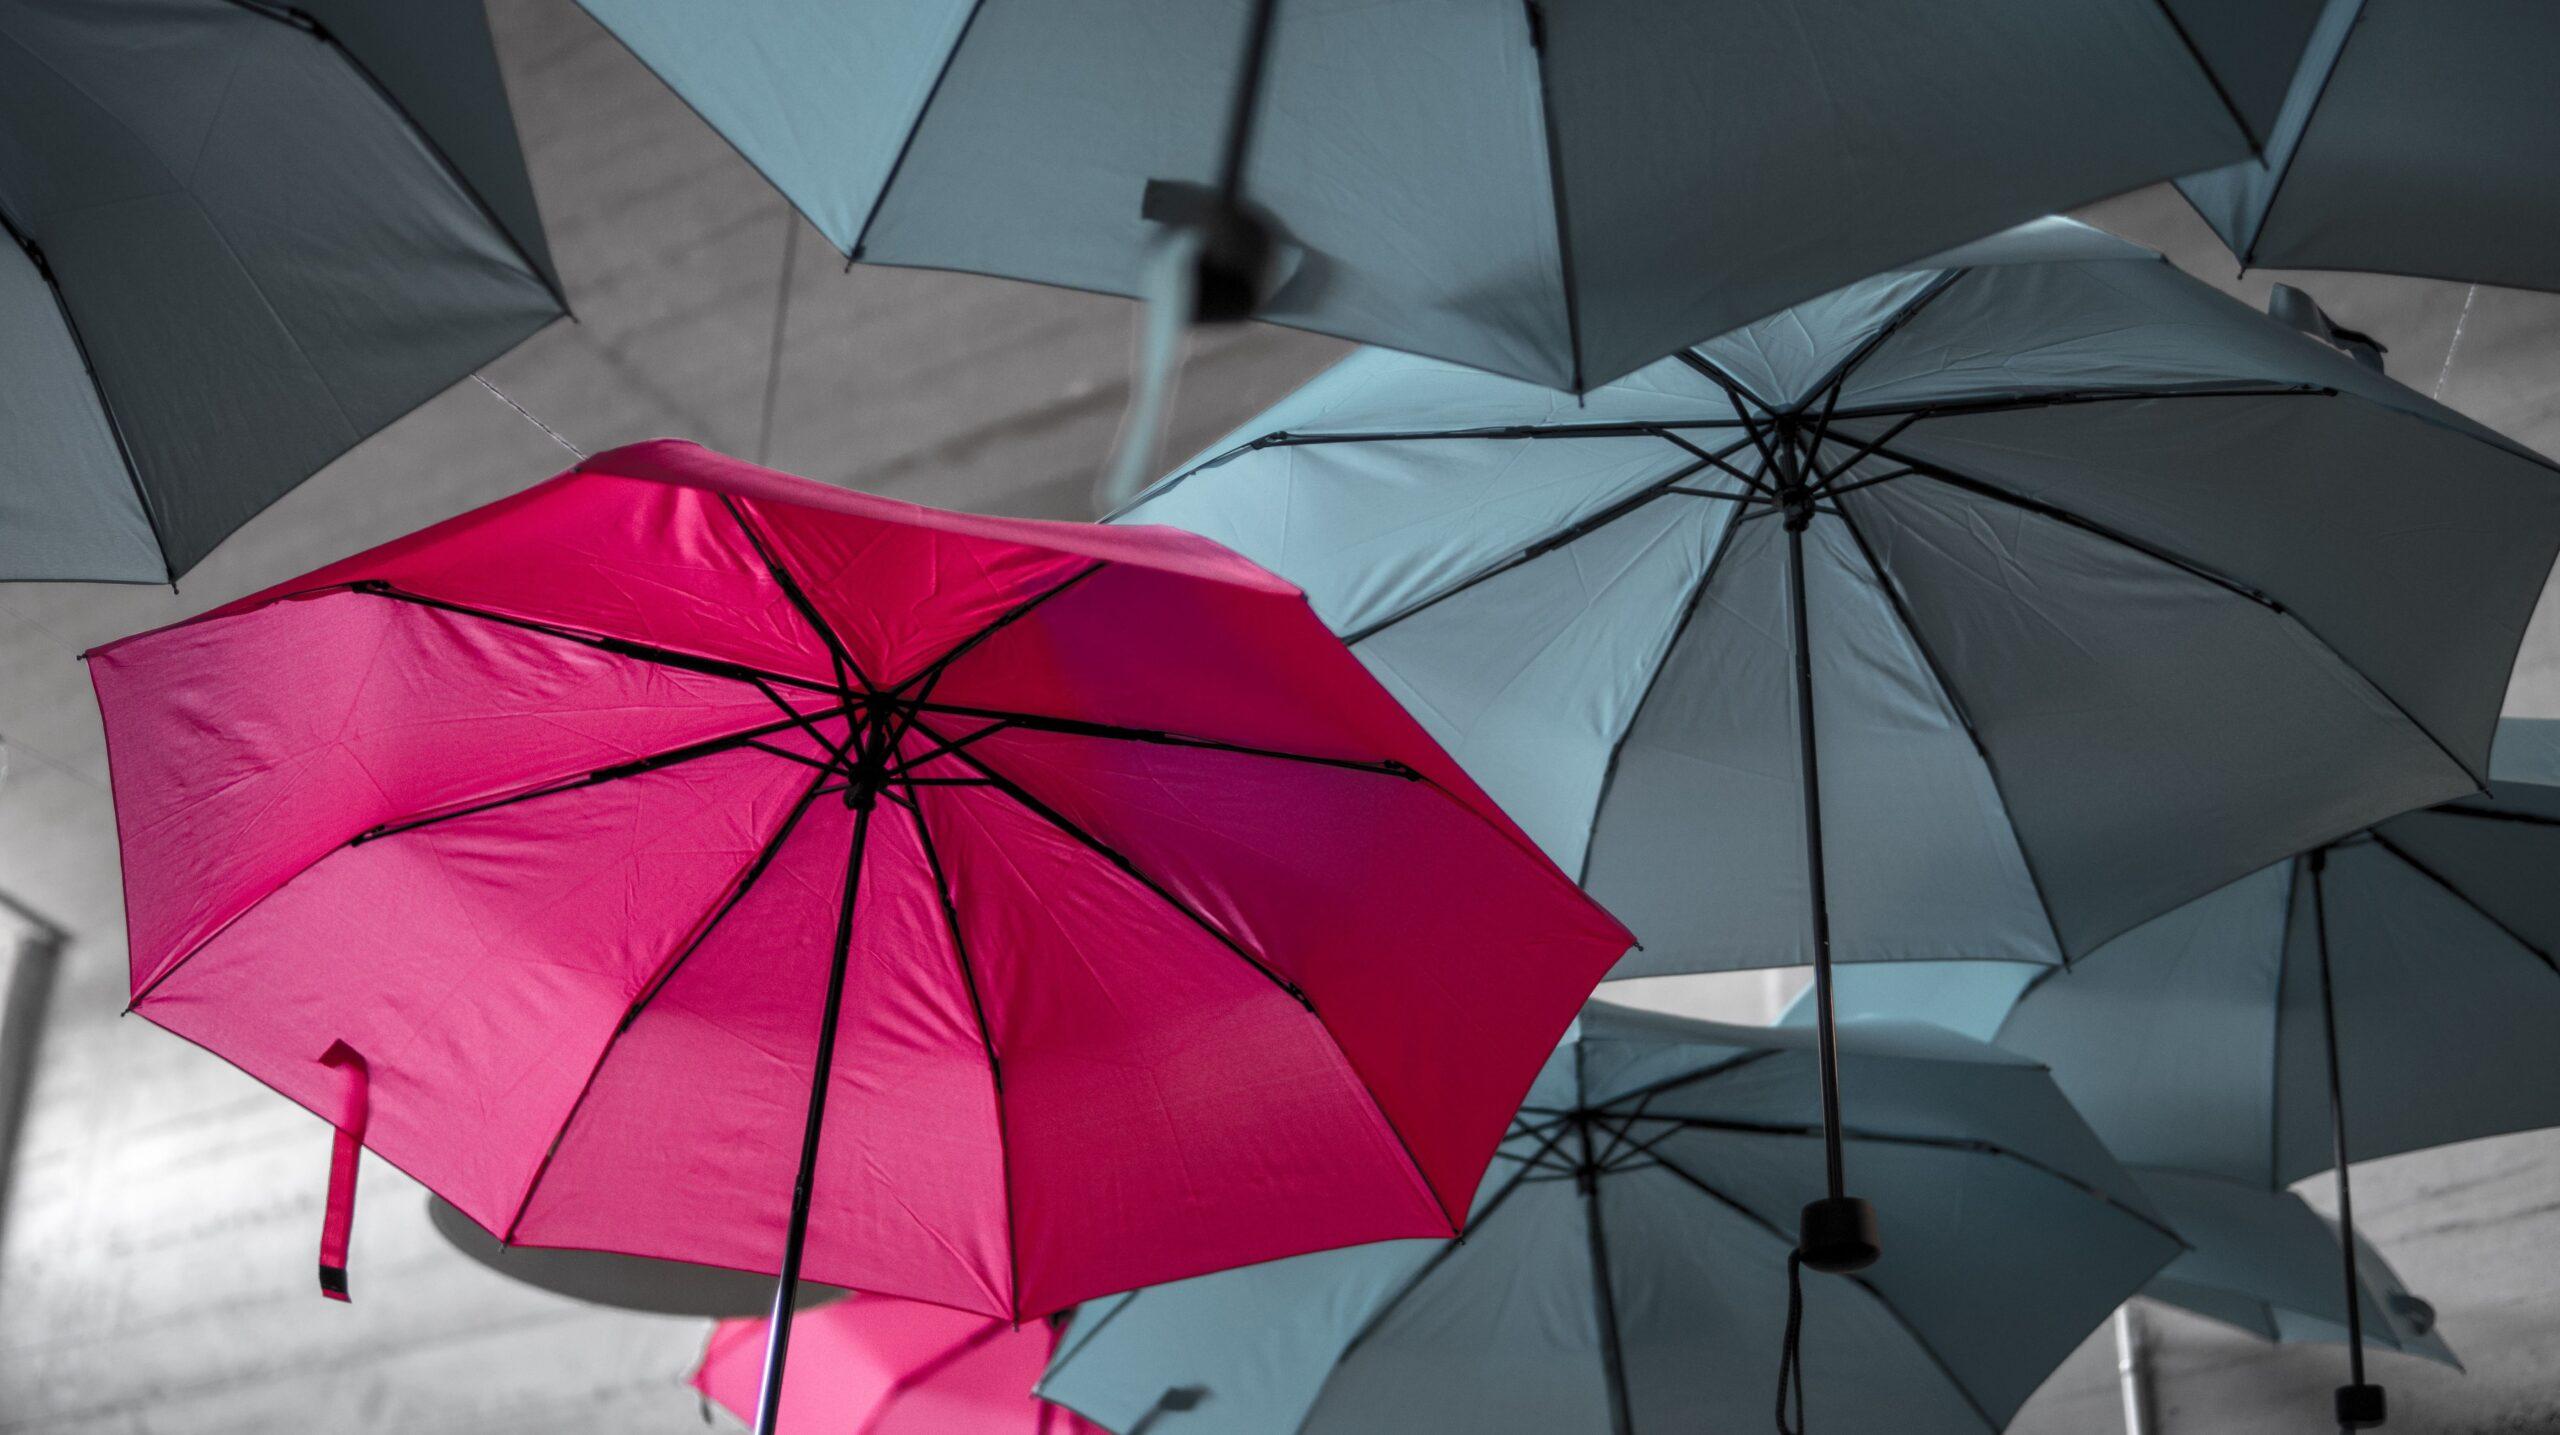 A red-coloured umbrella among grey-coloured umbrellas.